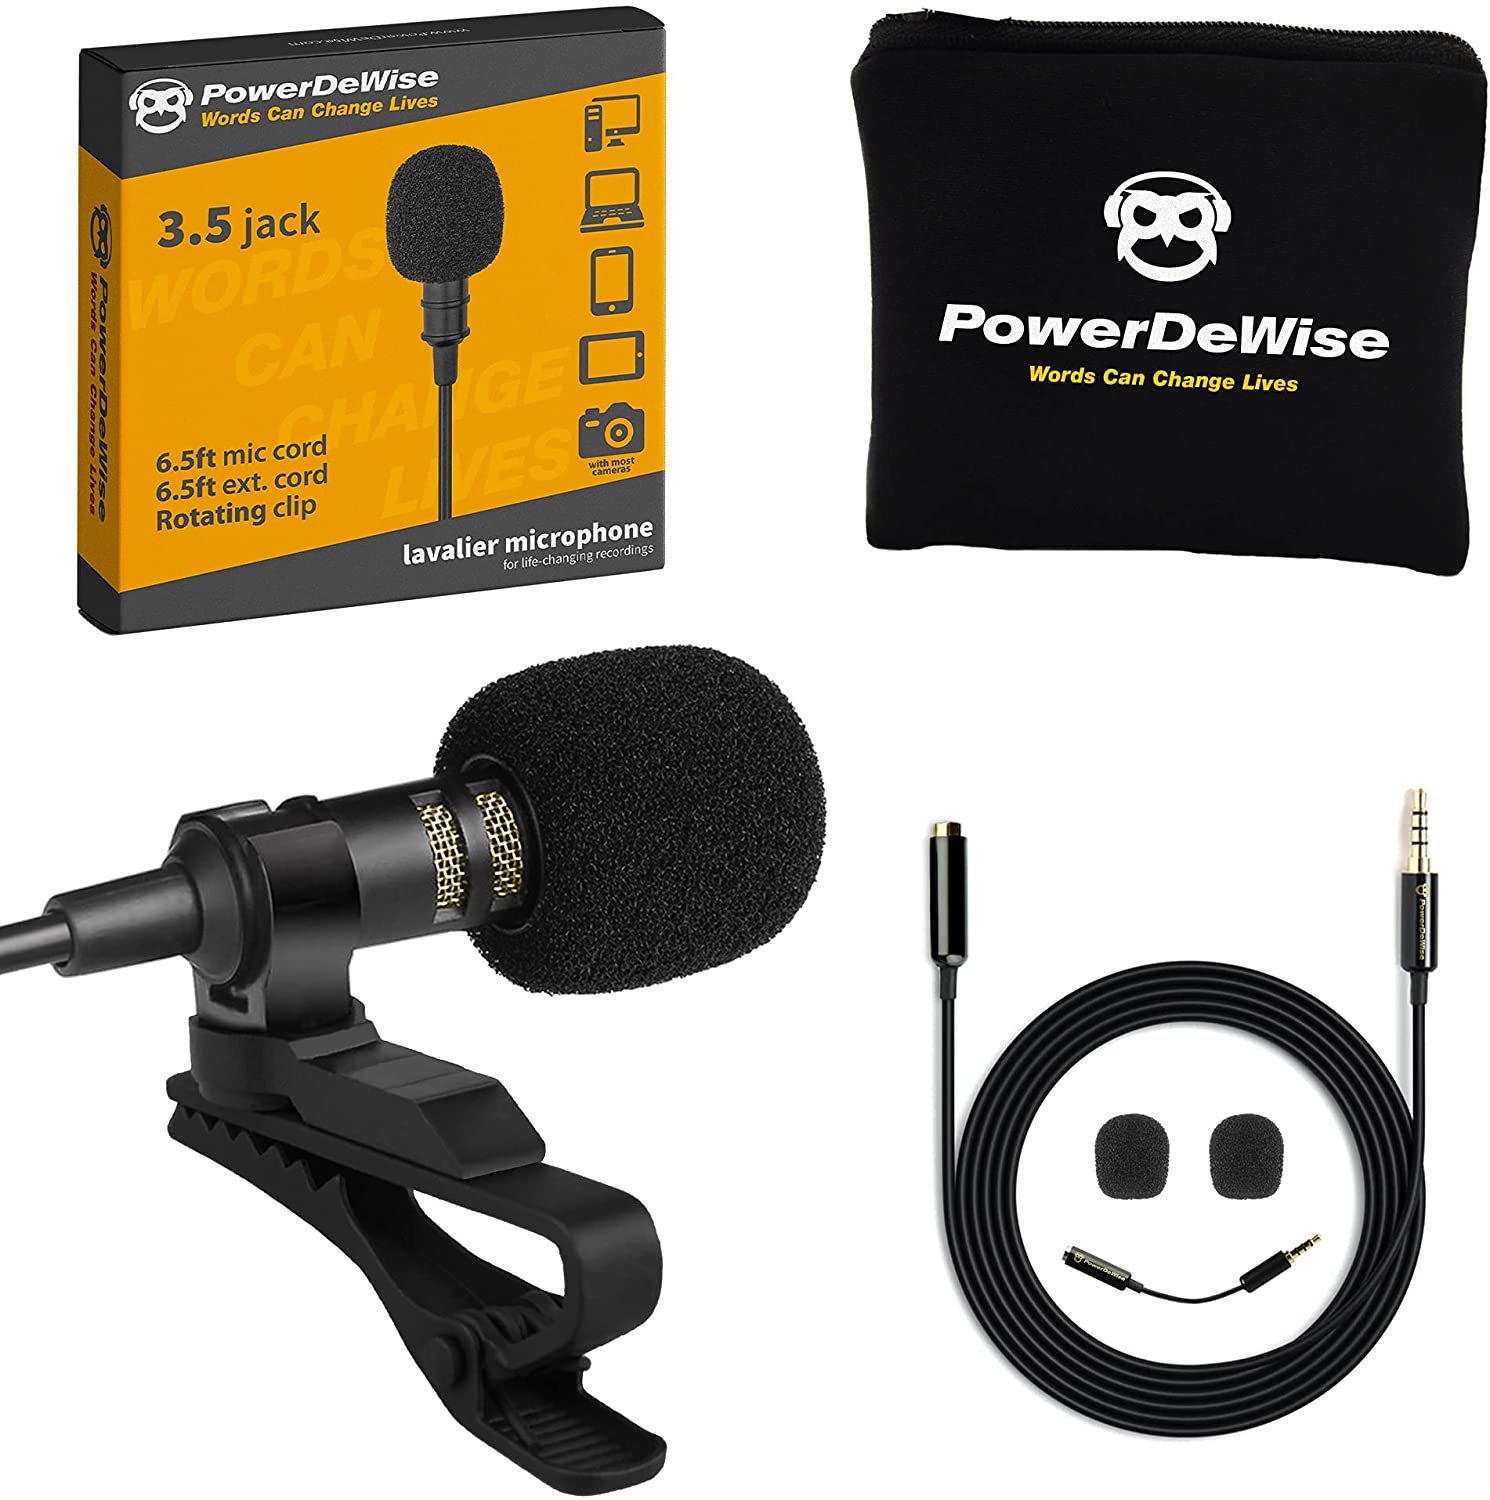 PowerDeWise-lavalier-microphone.jpg